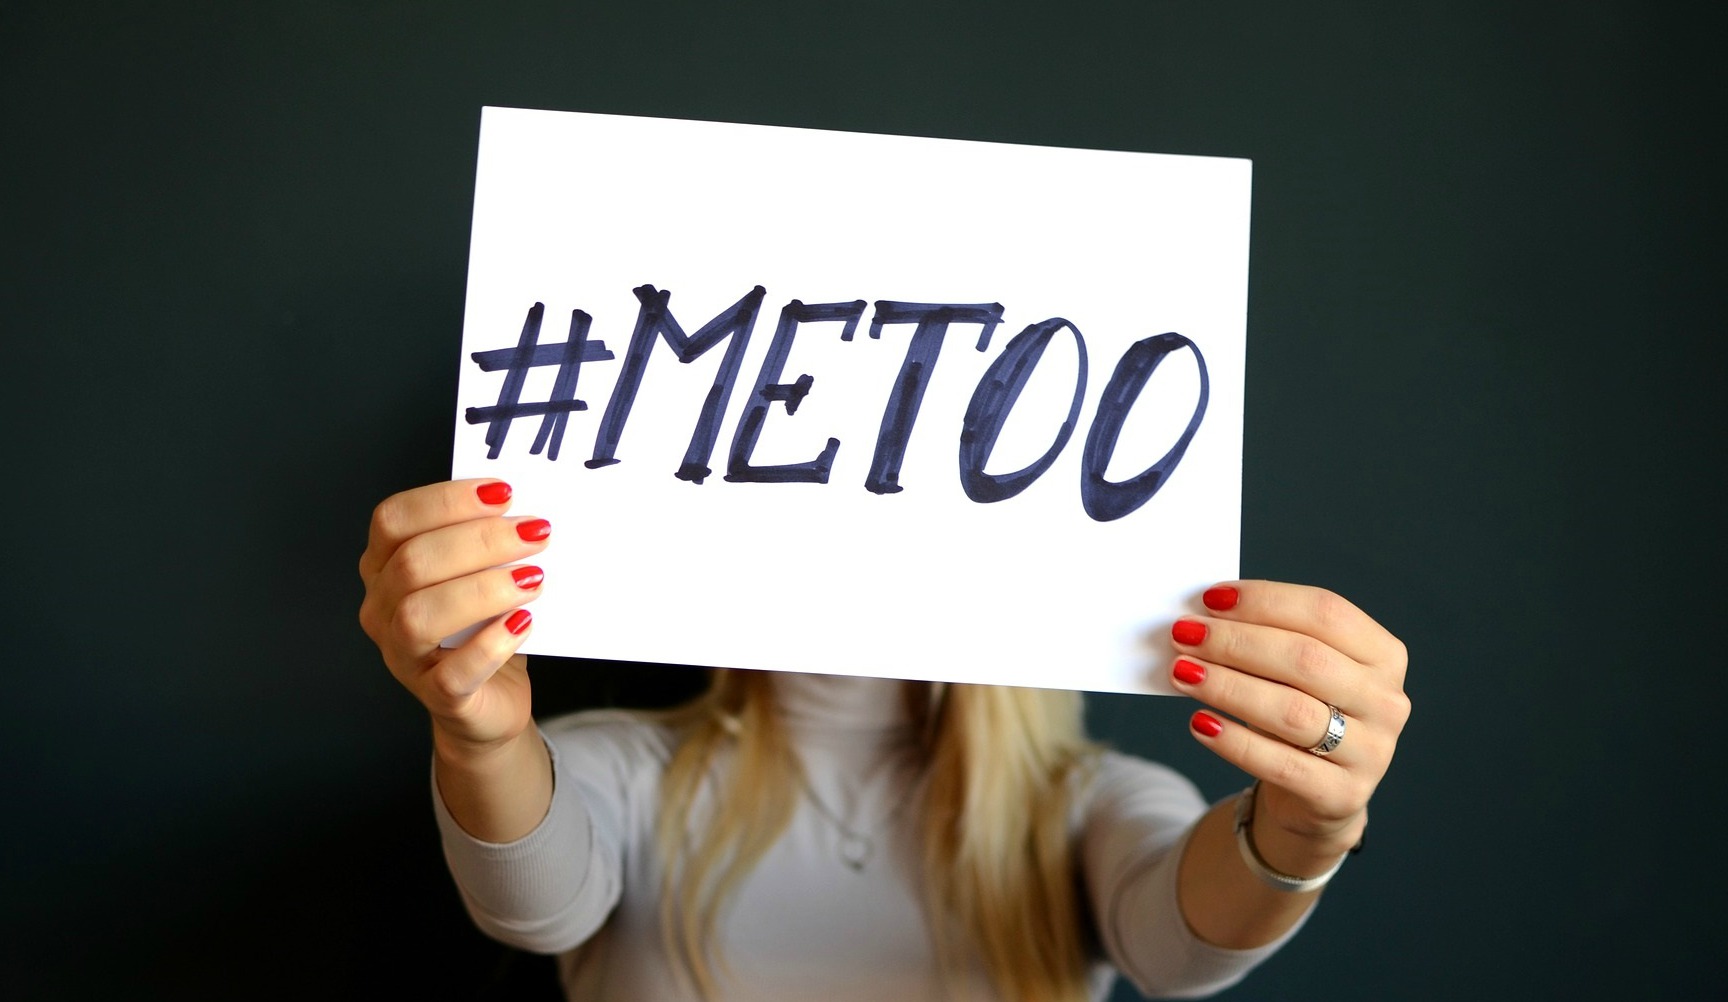 El movimiento #MeToo generado tras fuertes denuncias de abuso sexual y acoso ha dado la vuelta al mundo revelando grandes situaciones